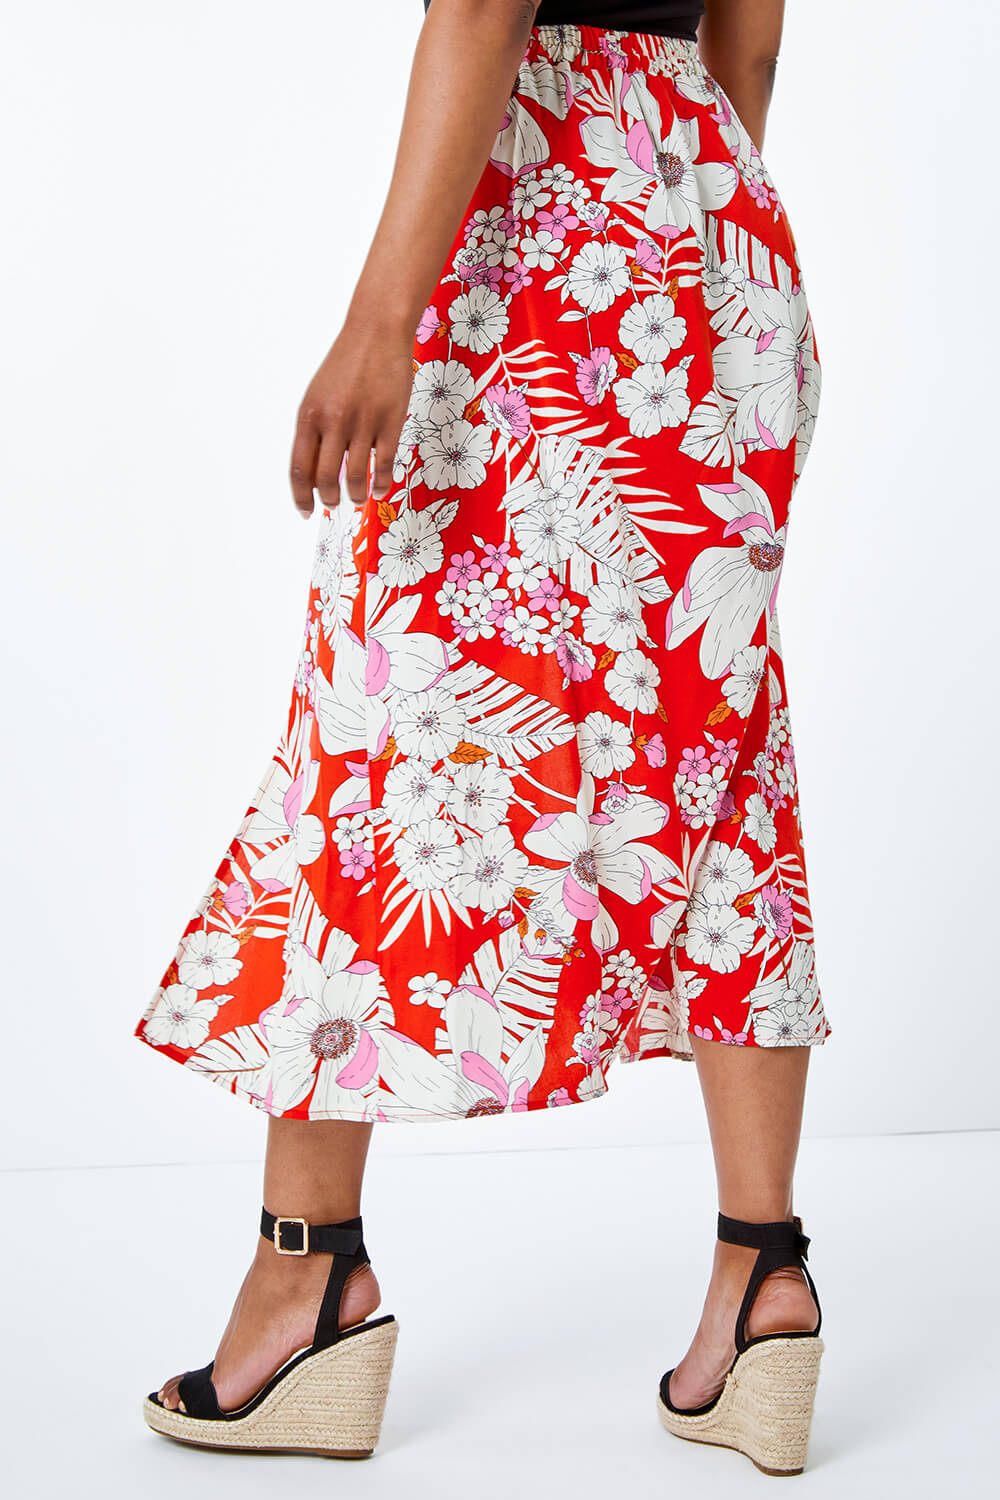 Petite Tropical Floral Midi Skirt in Red - Roman Originals UK